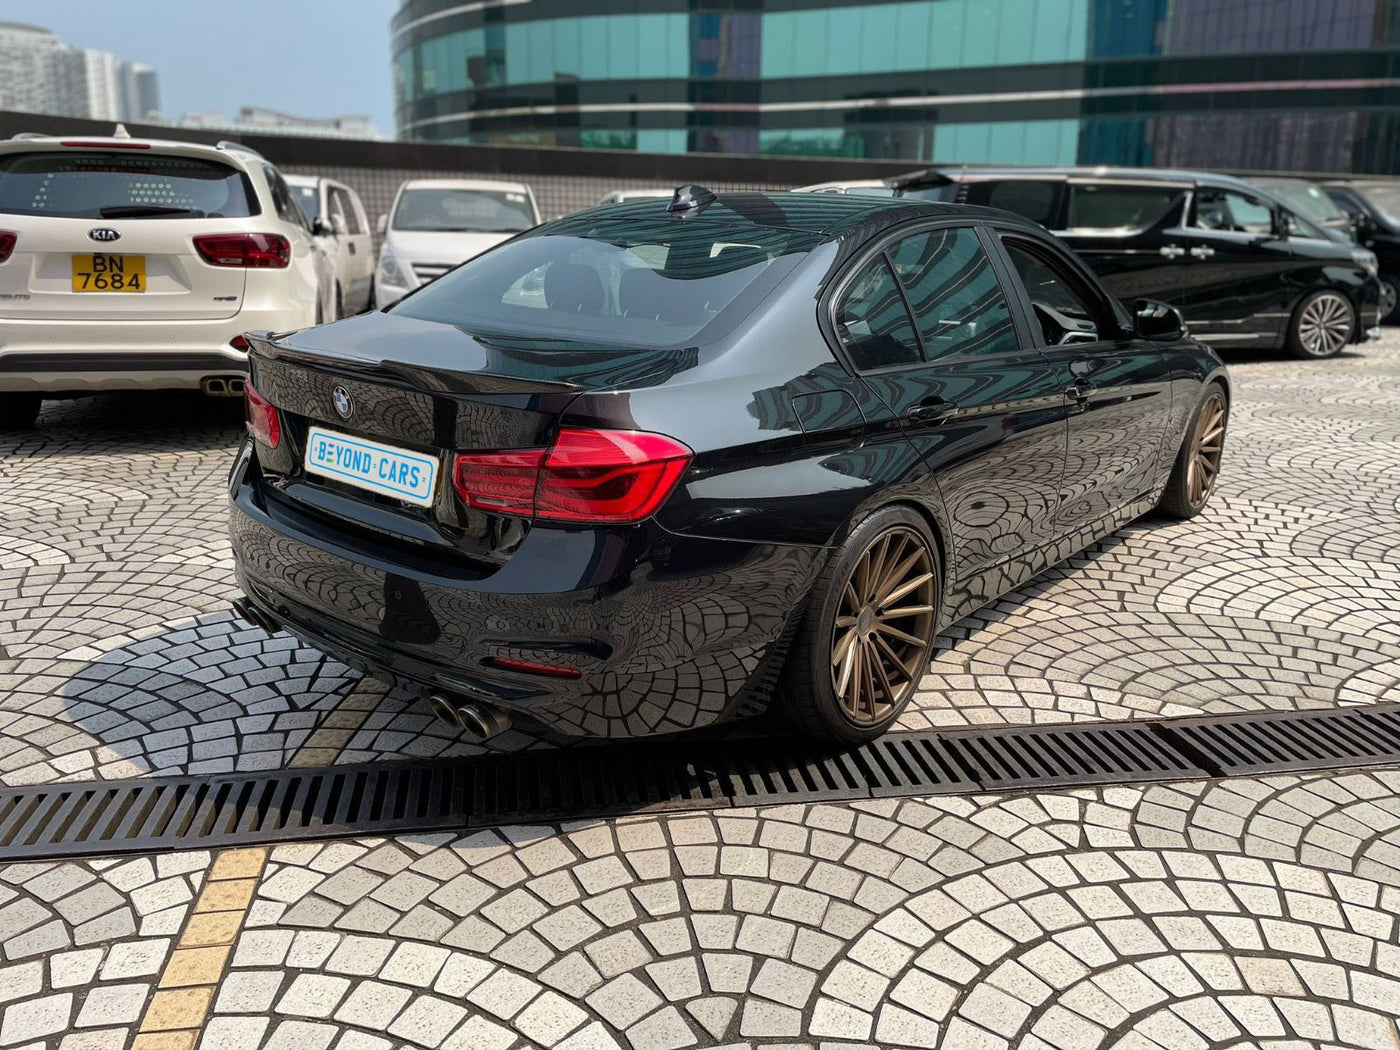 BMW 318i 2018